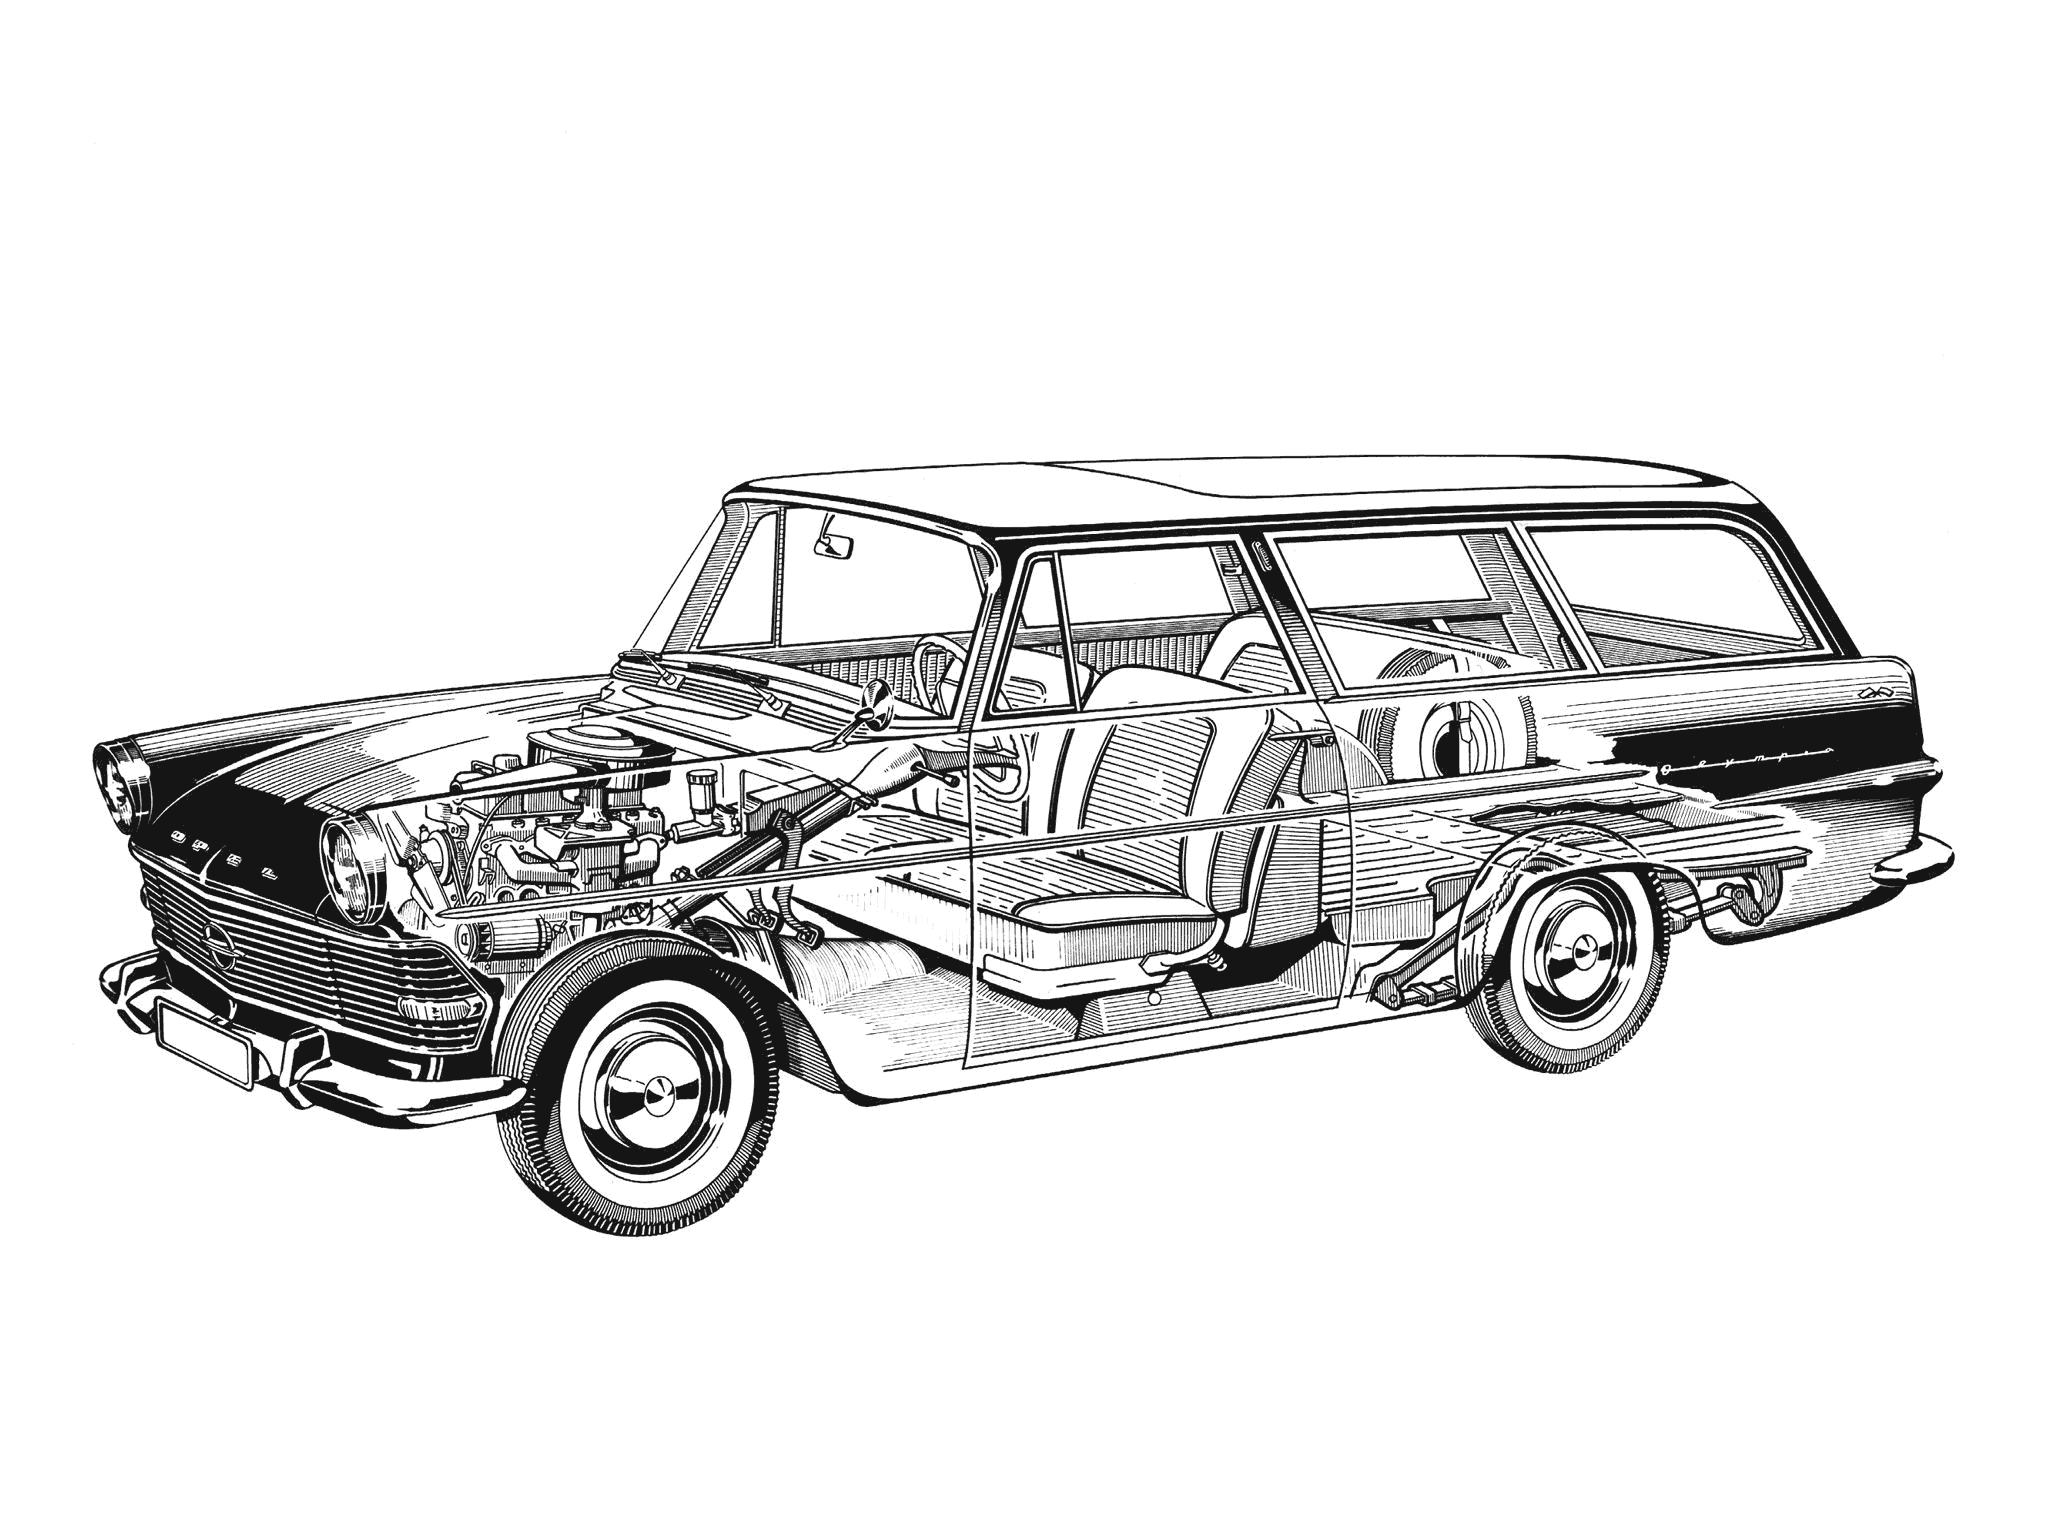 Opel Rekord Caravan cutaway drawing